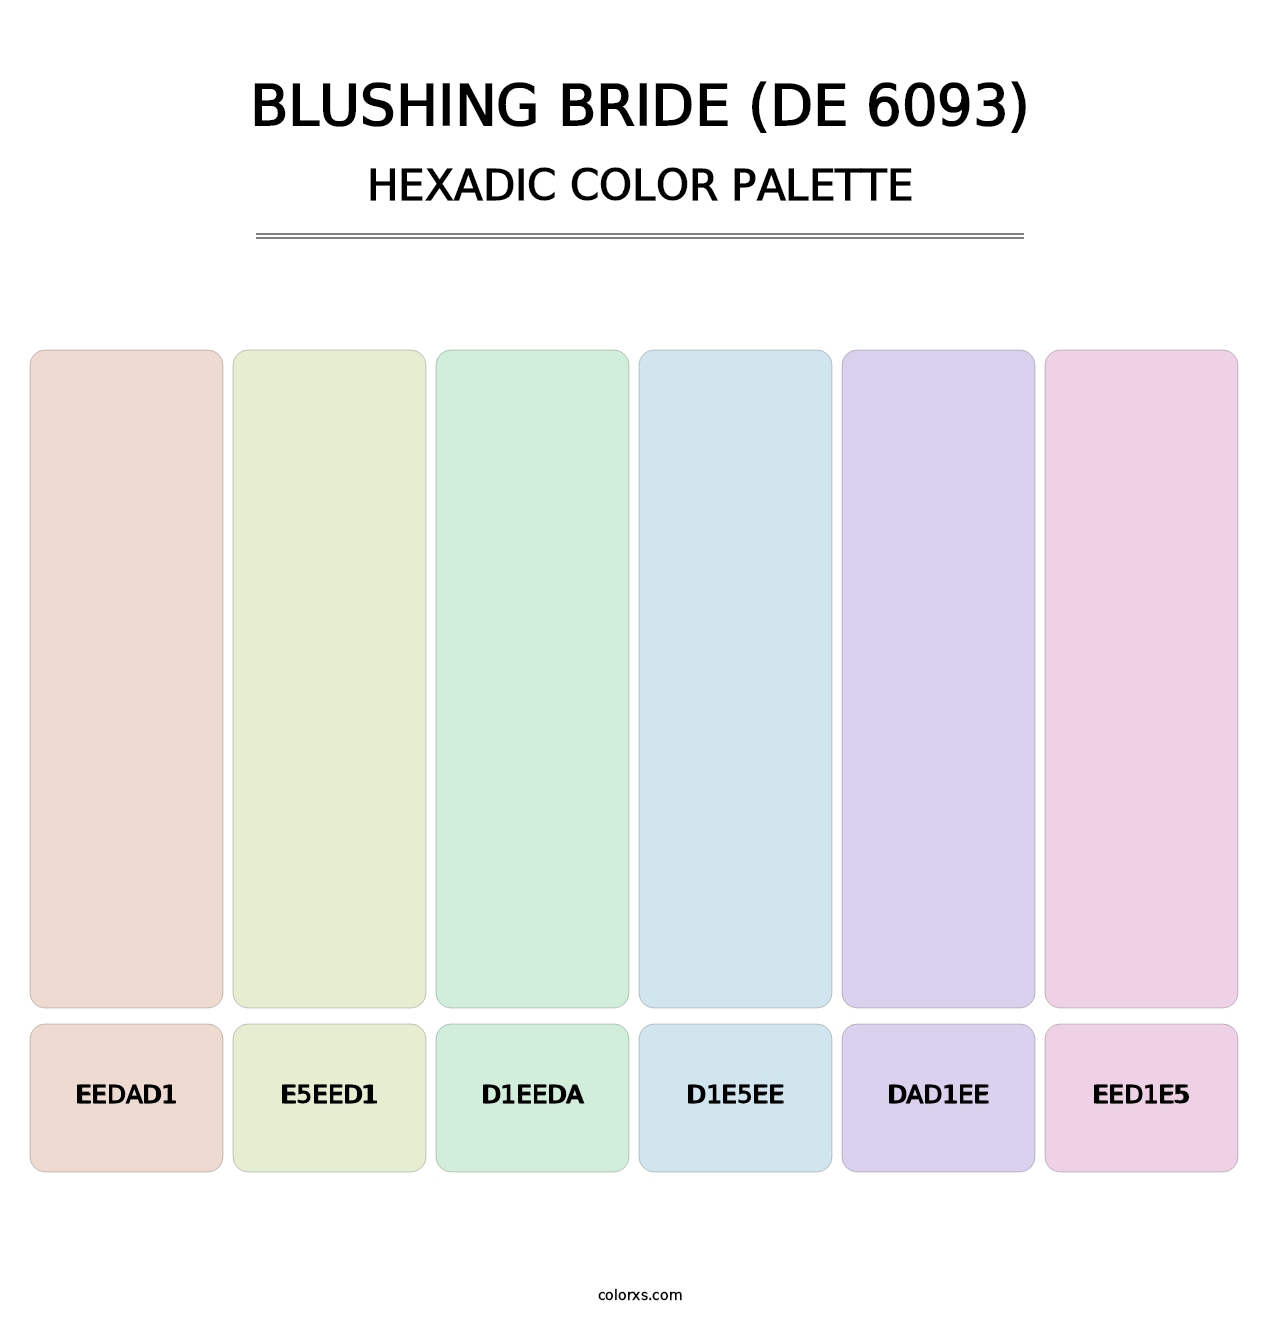 Blushing Bride (DE 6093) - Hexadic Color Palette